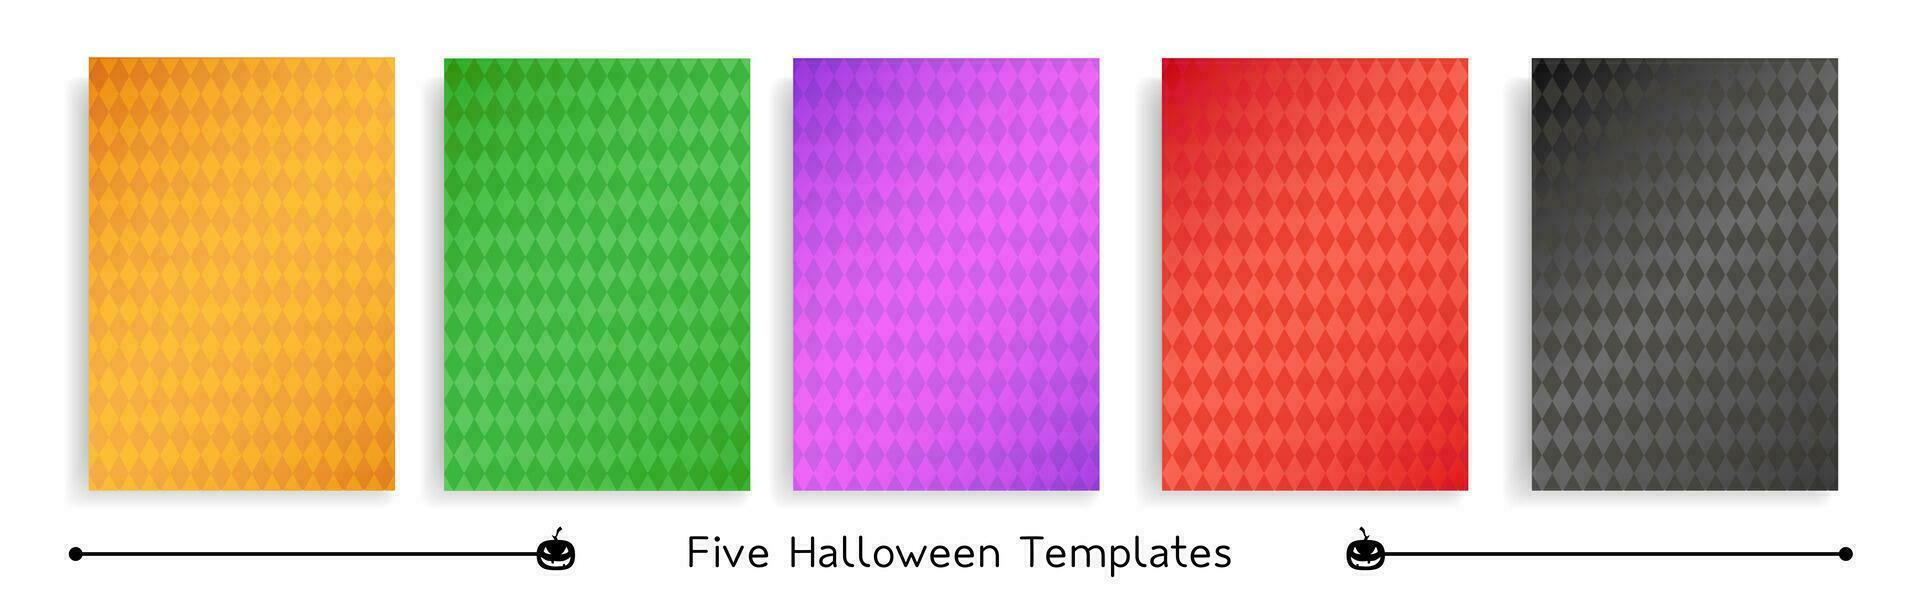 cinq Halloween carré modèles, Célibataire rhombe motifs dans traditionnel Halloween couleurs, groupe de vecteur carré arrière-plans.